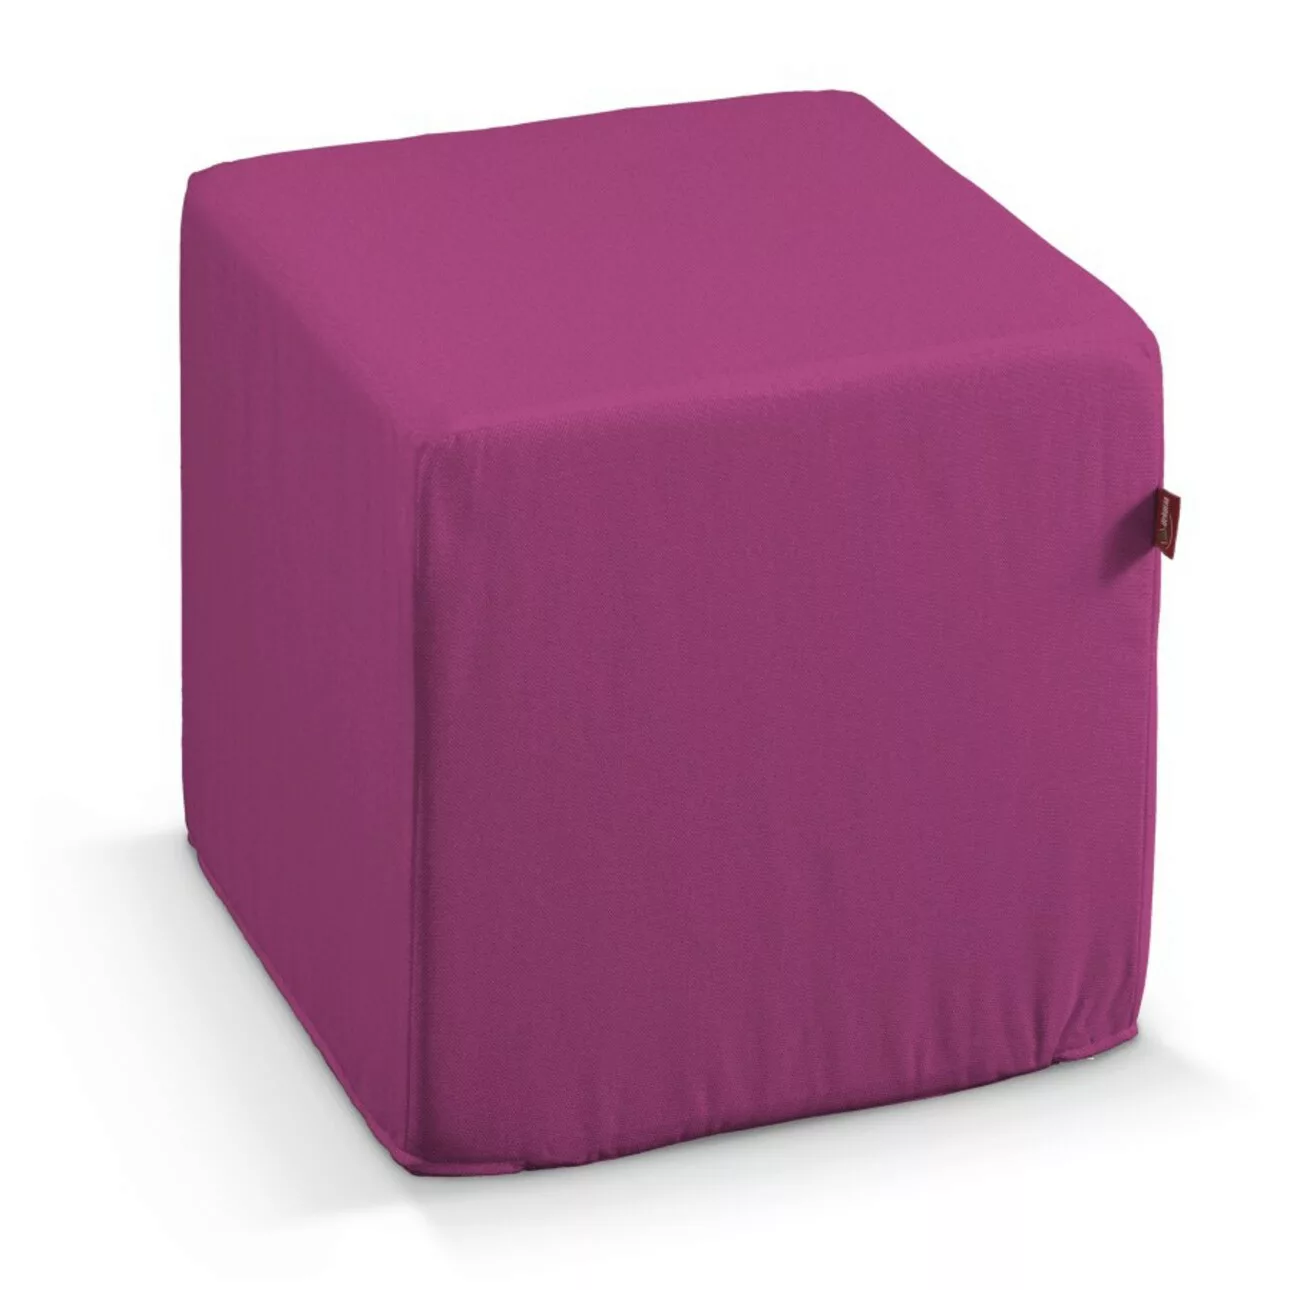 Bezug für Sitzwürfel, amarant, Bezug für Sitzwürfel 40 x 40 x 40 cm, Etna ( günstig online kaufen